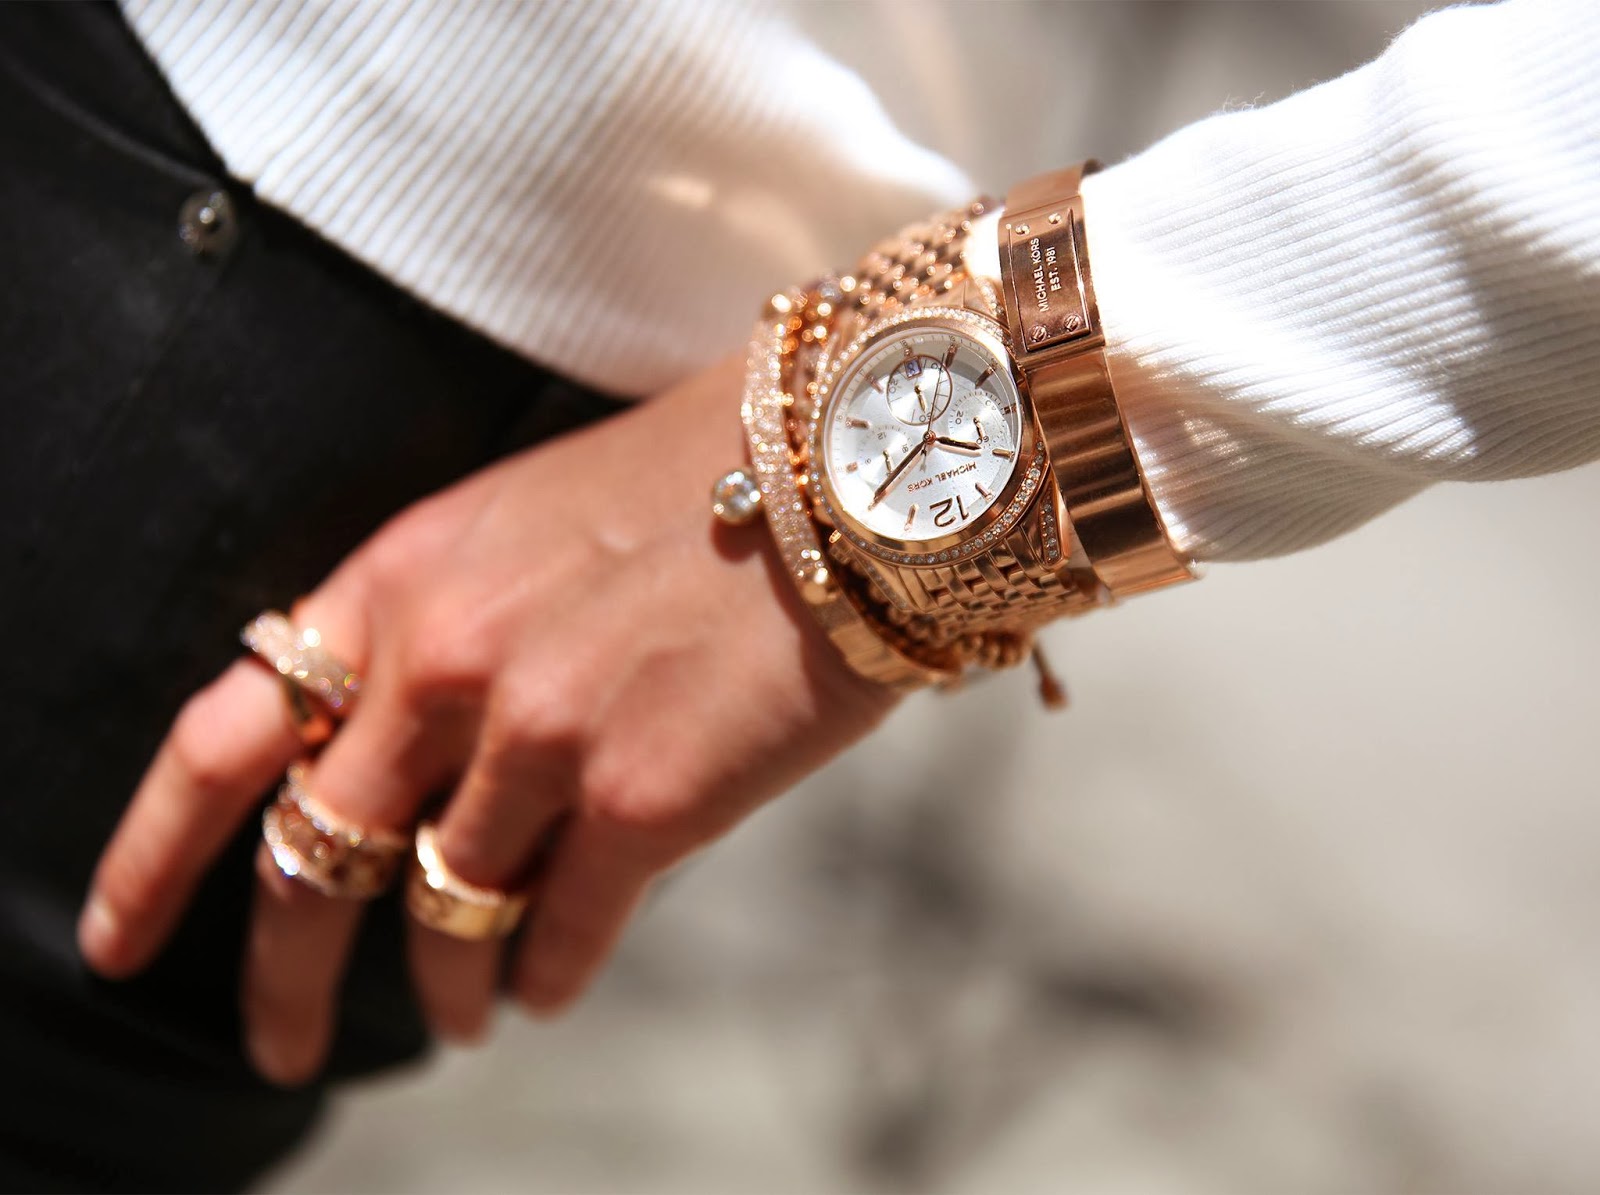 Мужские часы женщины. Золотые часы на руке. Мужские часы на женской руке. Красивые женские часы. Часы на руку женские.